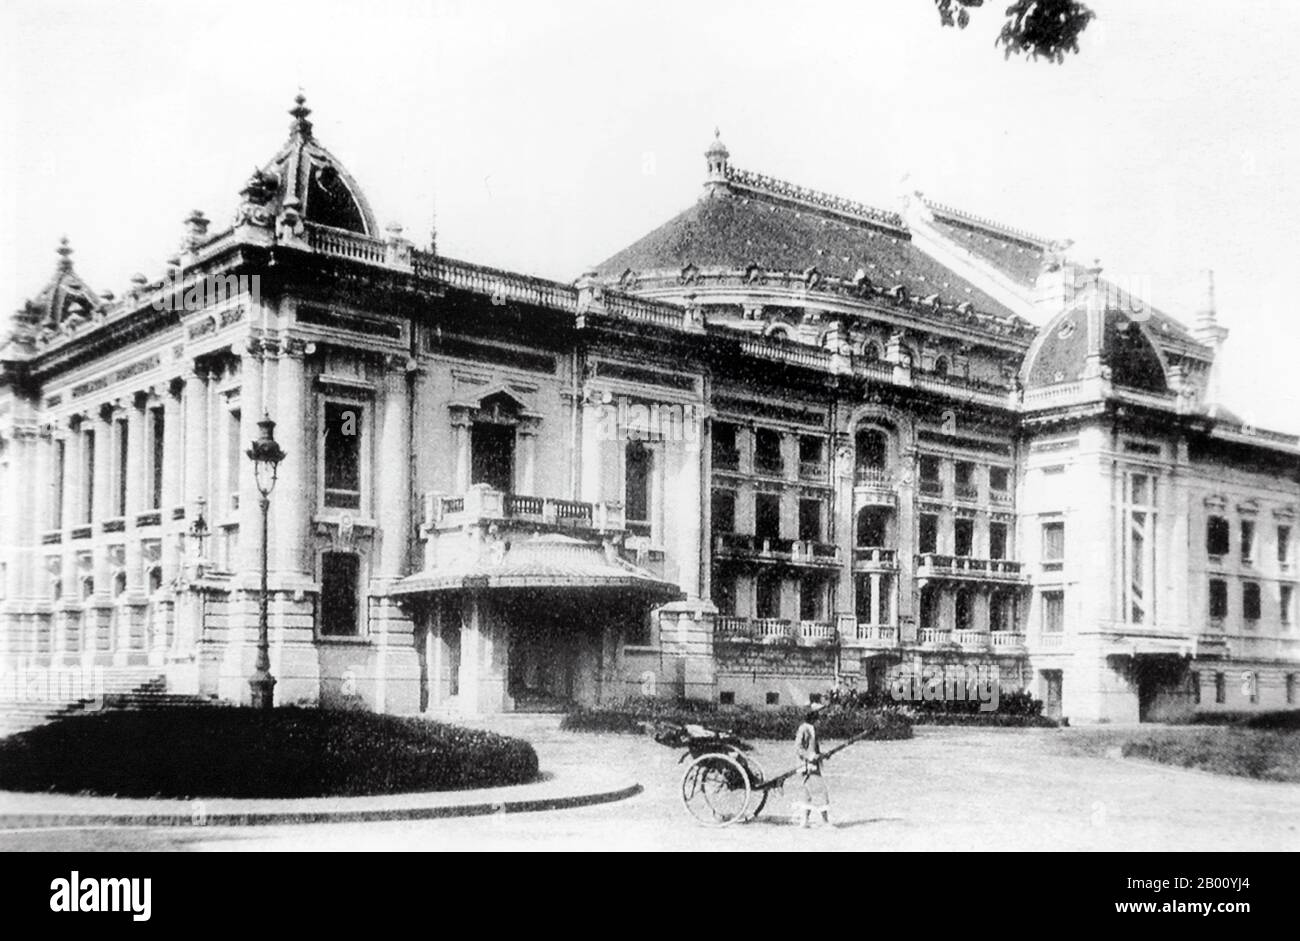 Vietnam: Hanoi Opera House (Anfang 20th Jahrhundert). Das zwischen 1901 und 1911 von französischen Kolonisten errichtete Opernhaus von Hanoi gilt als typisches französisches Kolonialbaudenkmal in Vietnam. Es handelt sich um eine kleine Nachbildung des Palais Garnier, des älteren der beiden Pariser Opernhäuser. Stockfoto